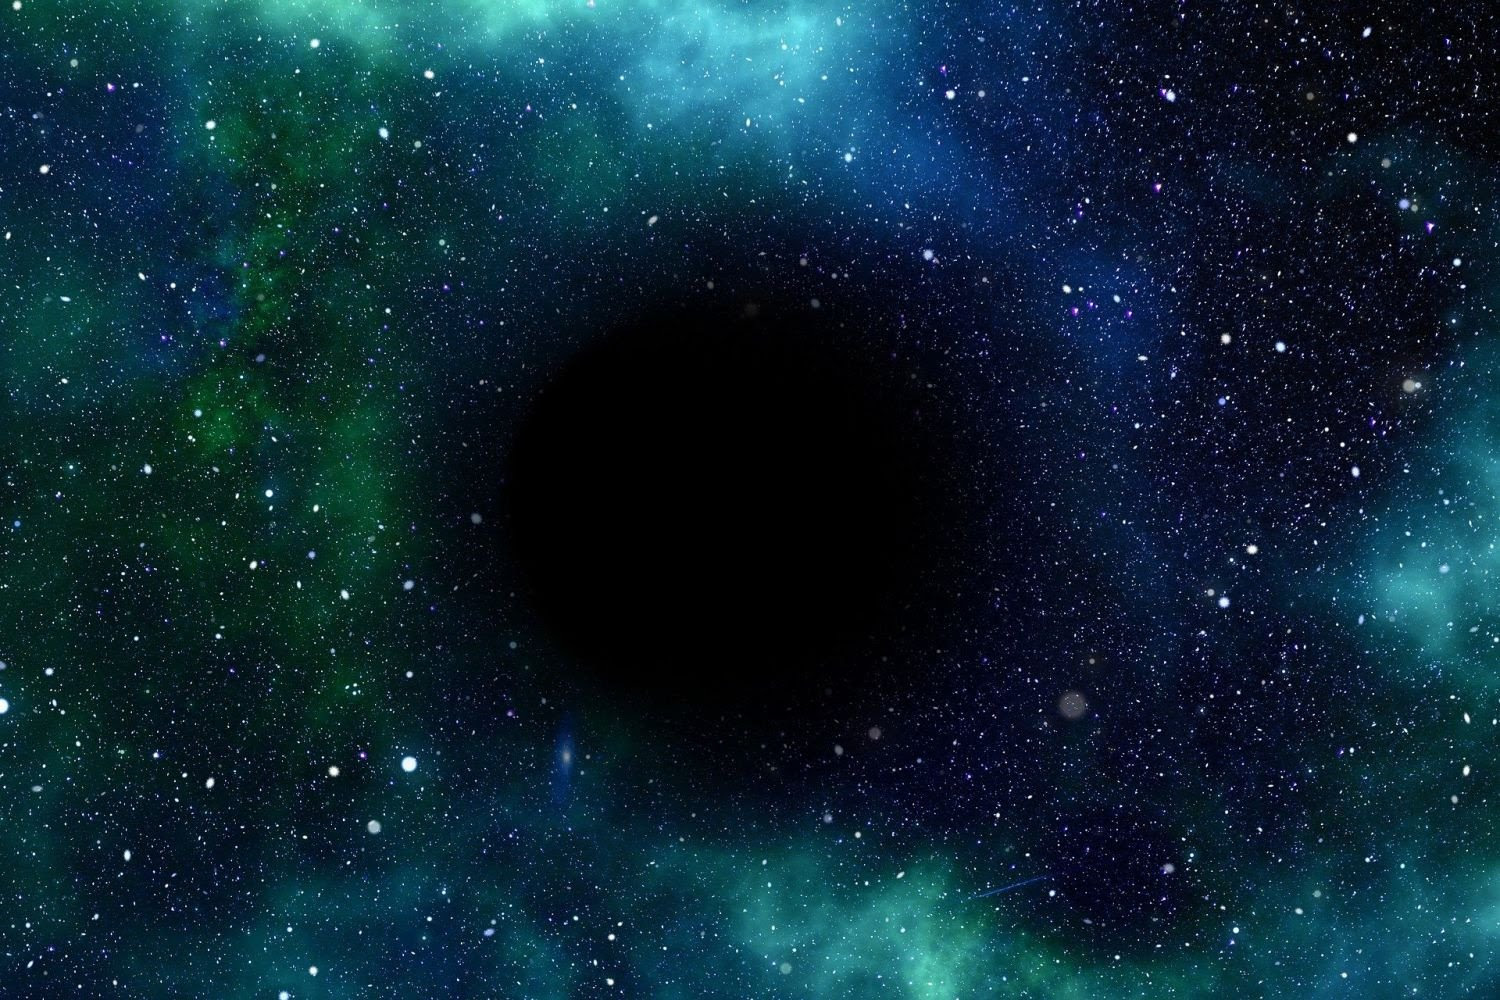 Πρωτόγνωρο: Η απίστευτα μεγάλη μαύρη τρύπα LB-1 που ανακάλυψαν στο γαλαξία μας